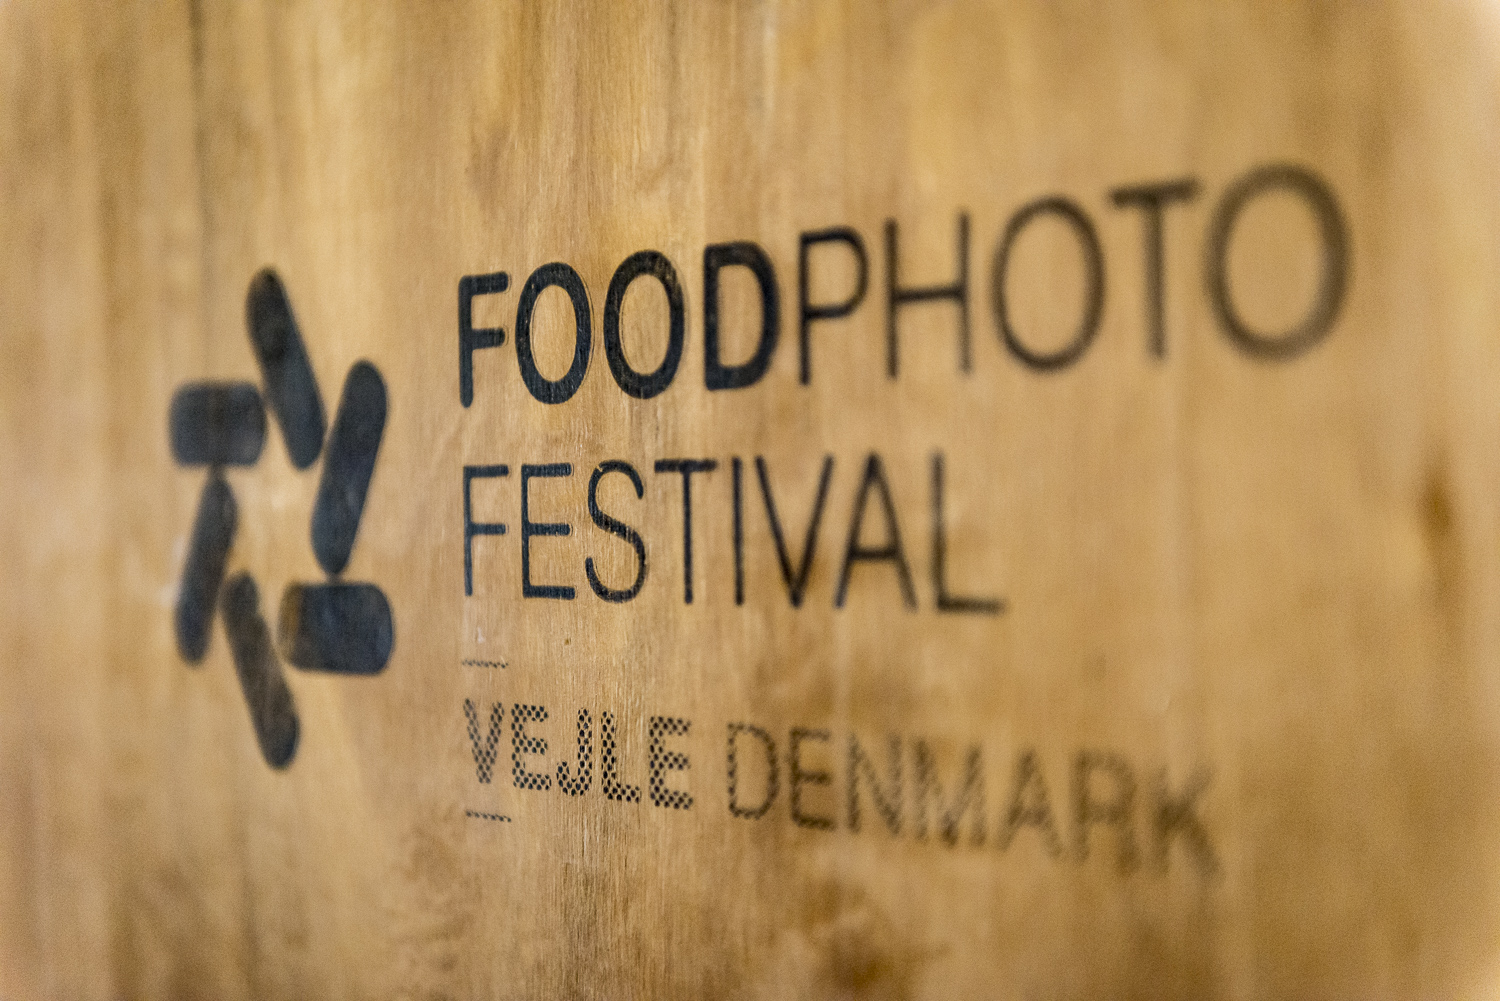 FOODPHOTO FESTIVAL Vejle 2019, Foto: Frank Peters, ffpeters.de